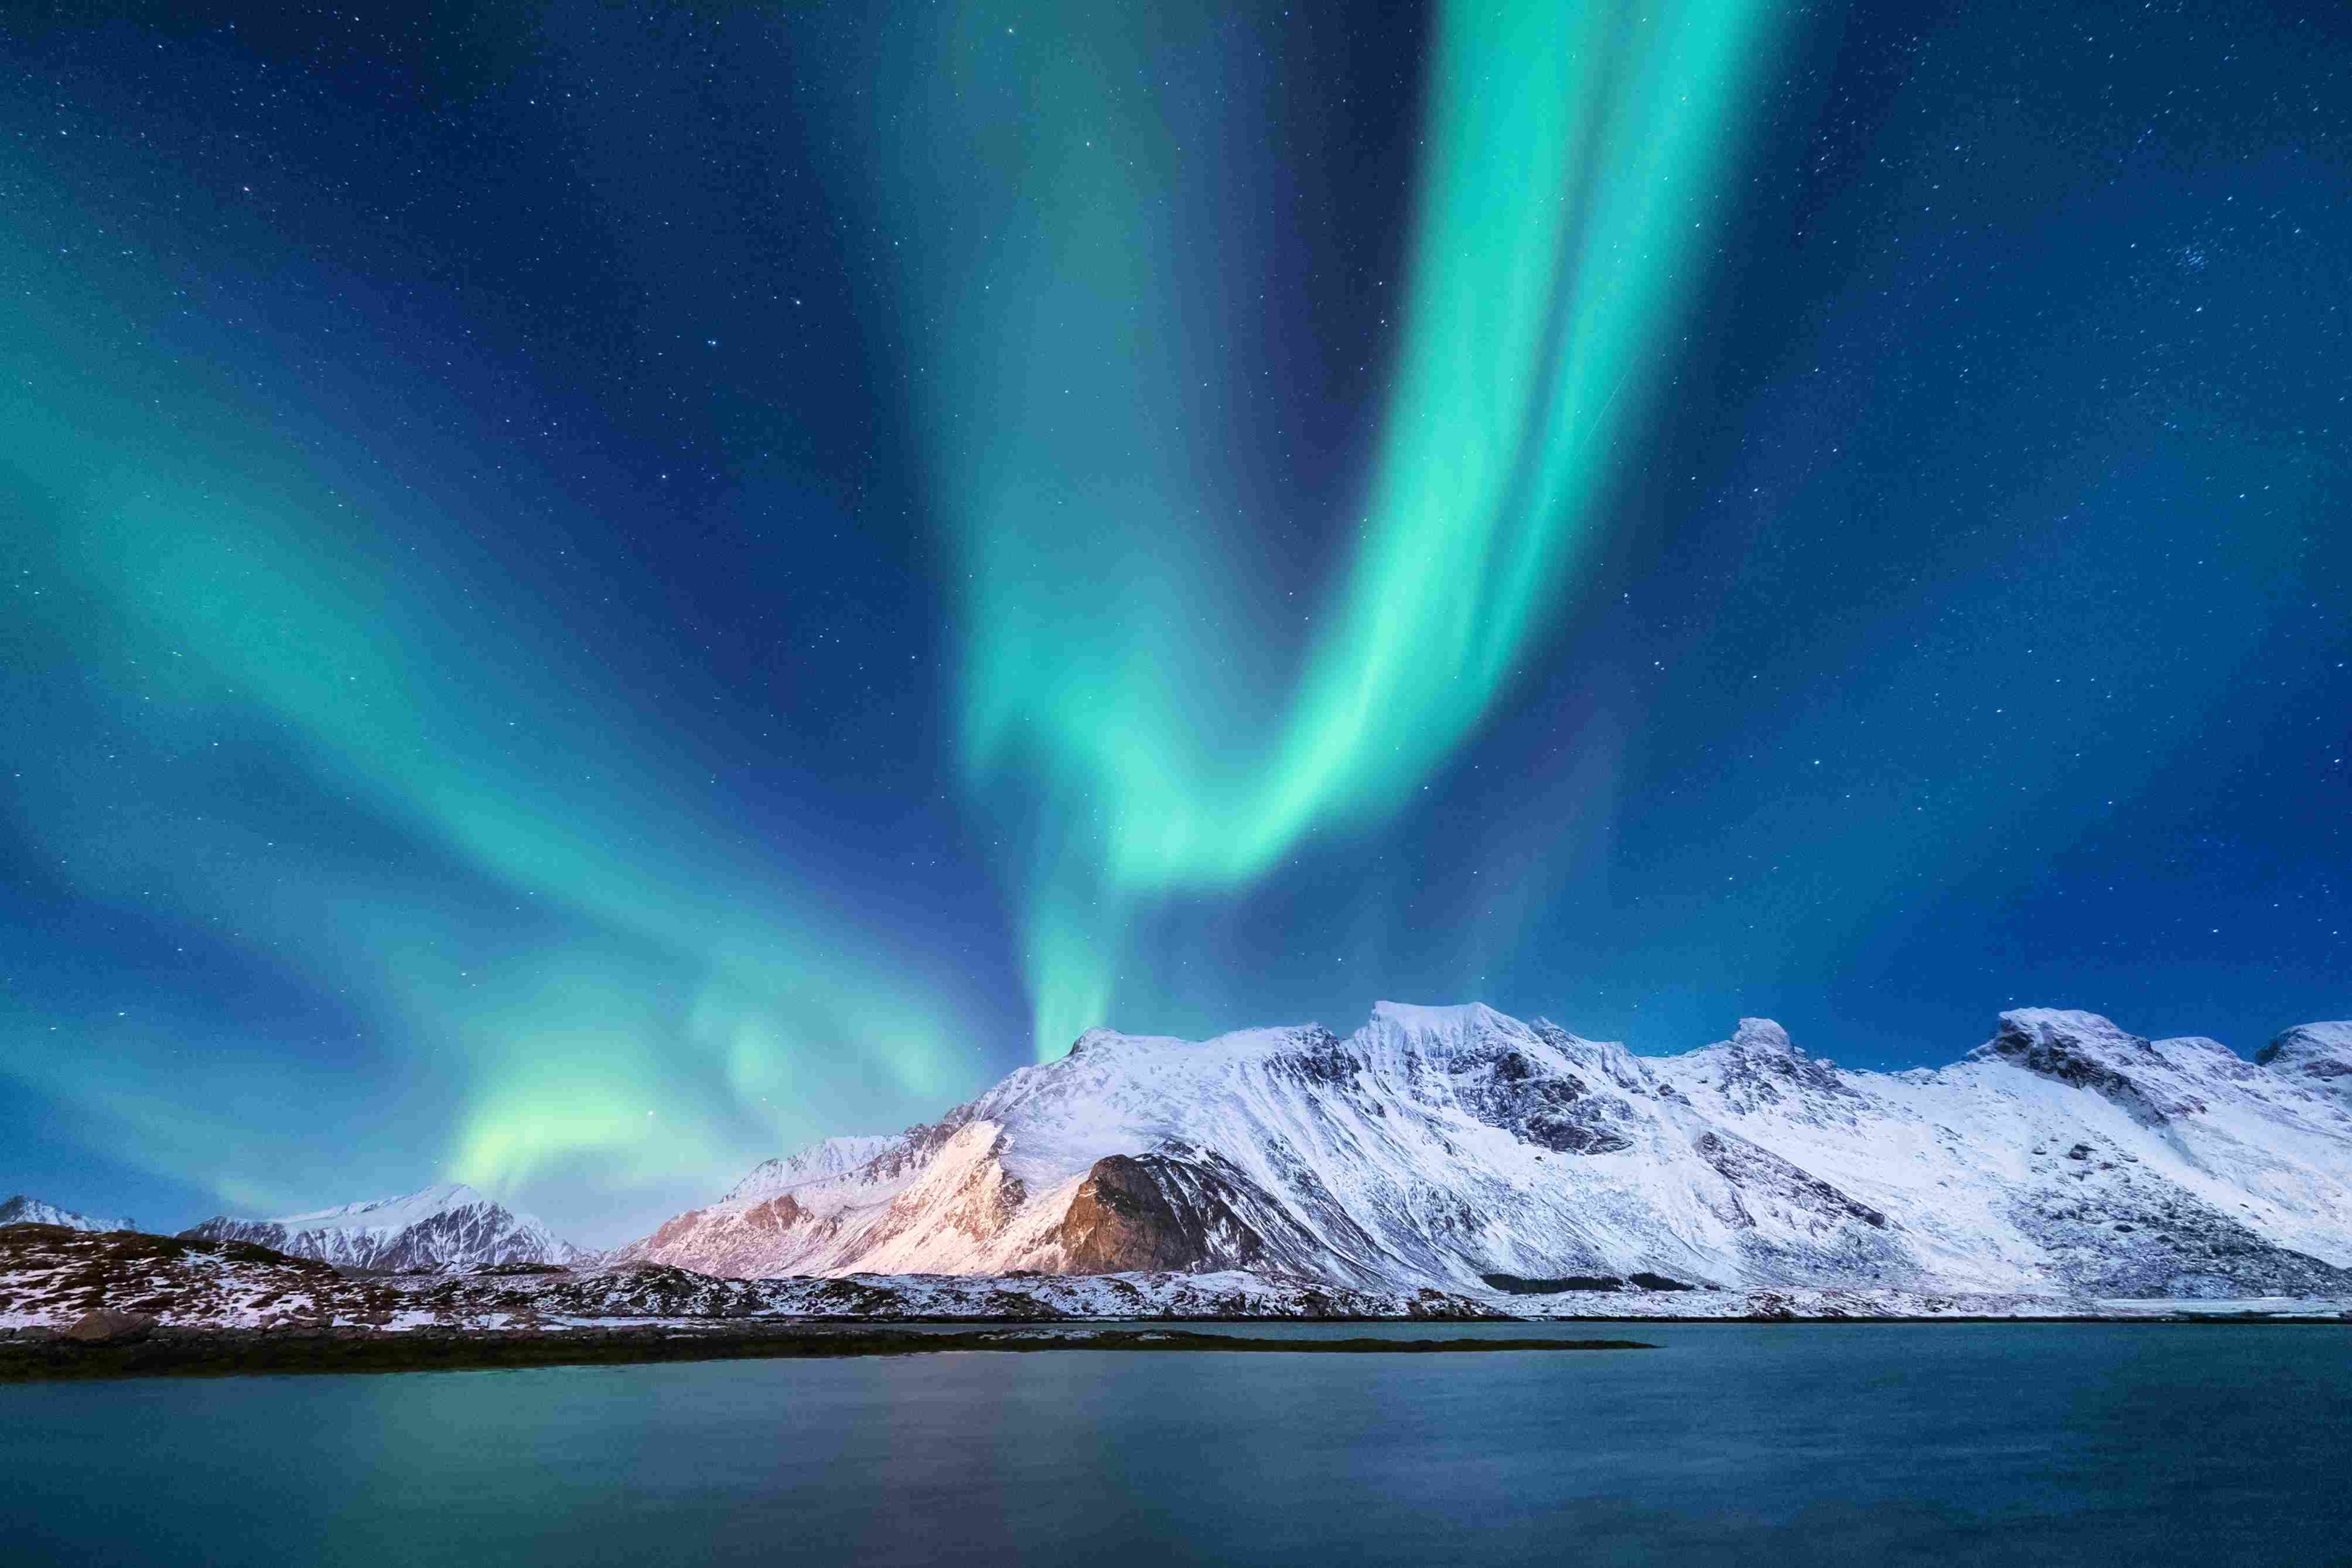 Paisagem nocturna de inverno com luzes verdes do norte sobre as montanhas e reflexo na superfície da água